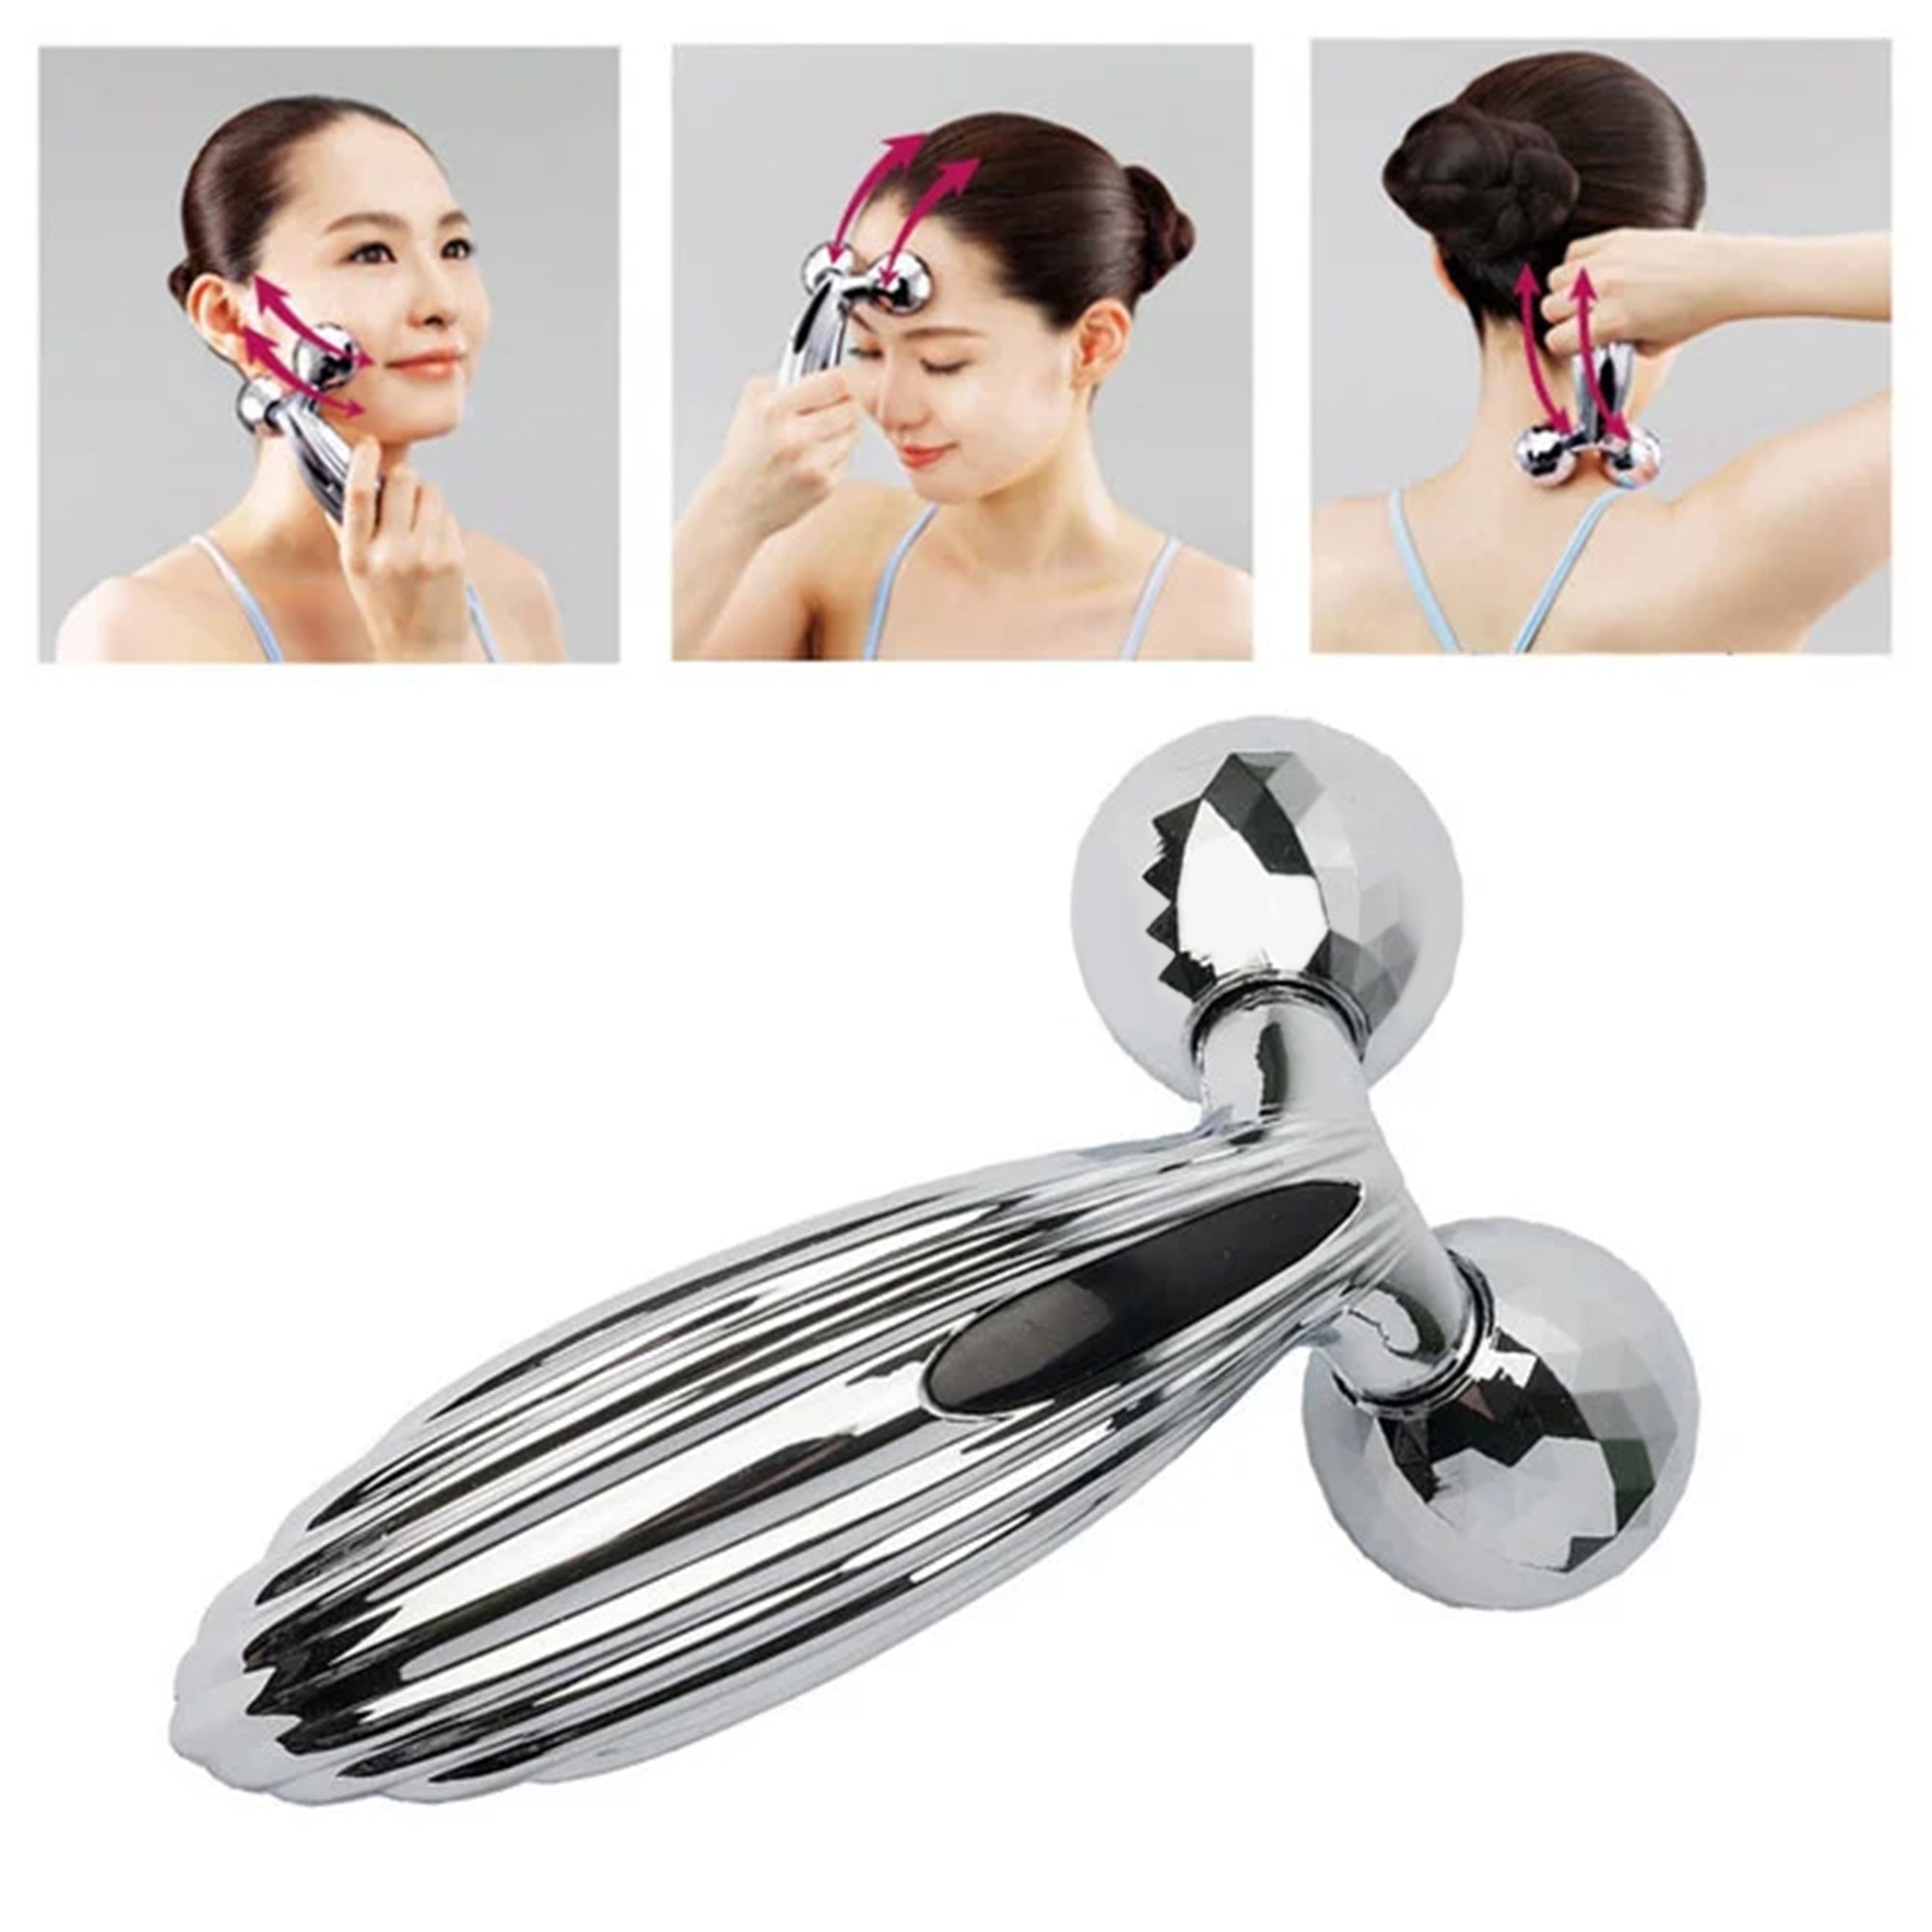 Uniqaya 3D Manual Face Roller Massager For Men & Women  | Facial Massager & Face Roller For Glowing Skin